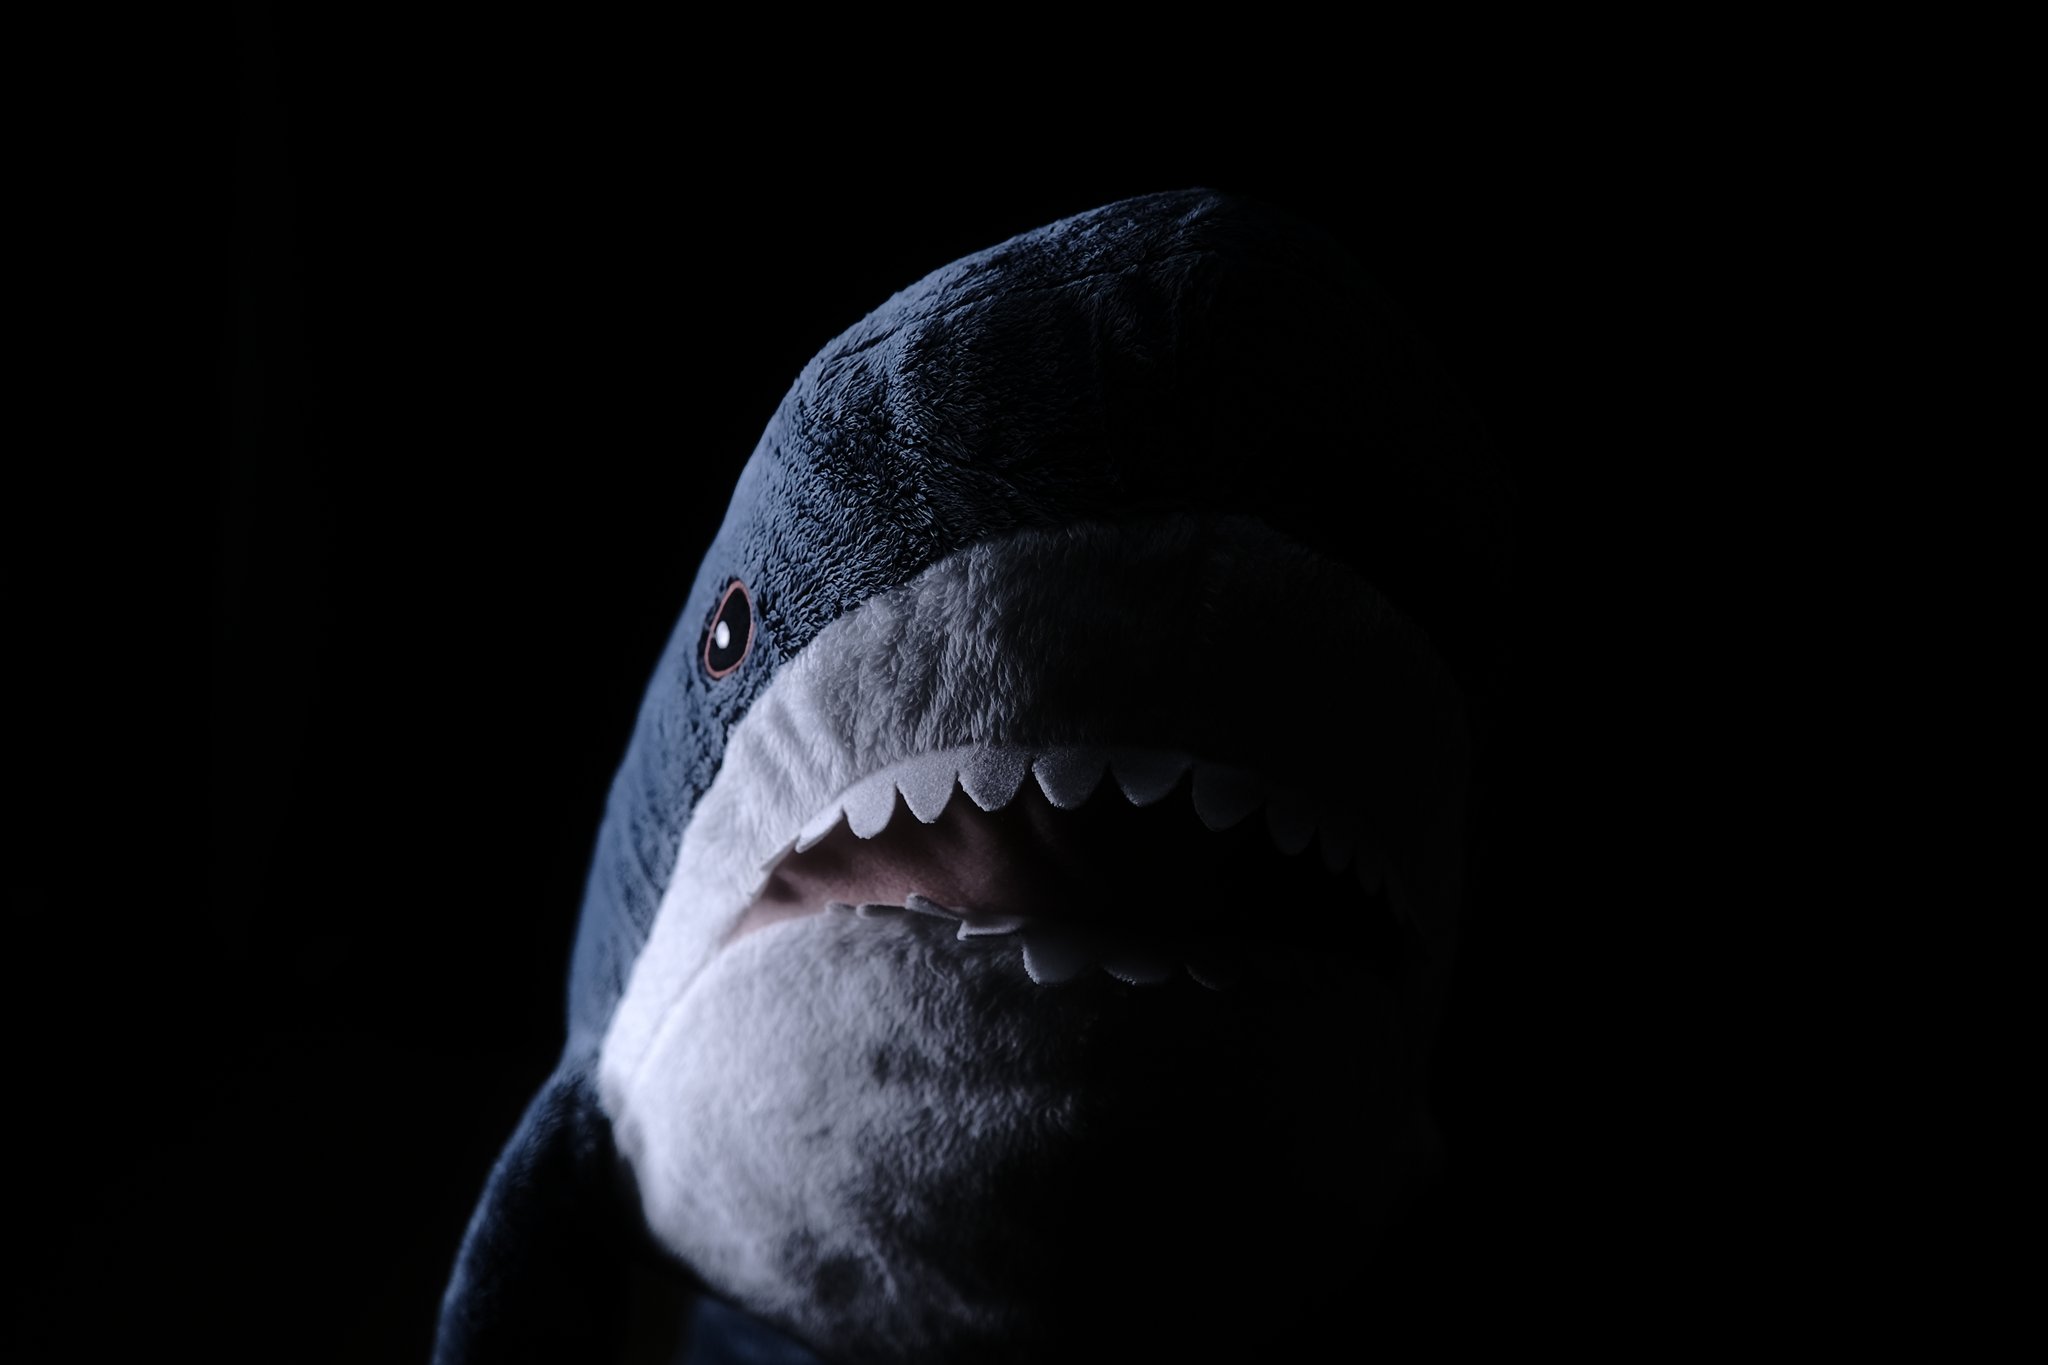 Tonkotutarou 外出自粛でやることがないので Ikeaのサメを怖そうに撮ってたら一日が終わった T Co Hwfnf4k0bu Twitter